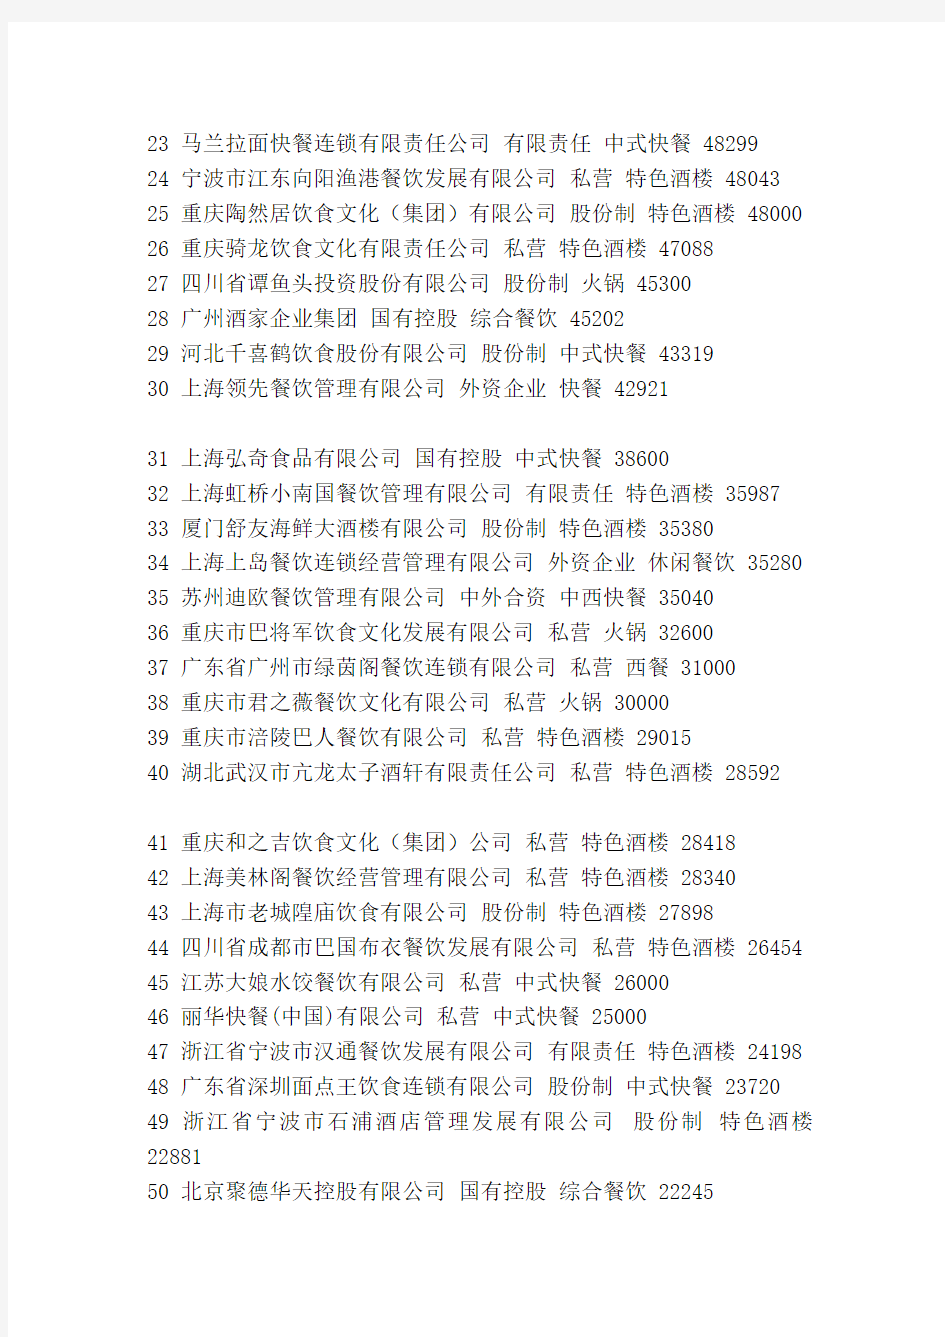 2011年度中国餐饮百强企业名单